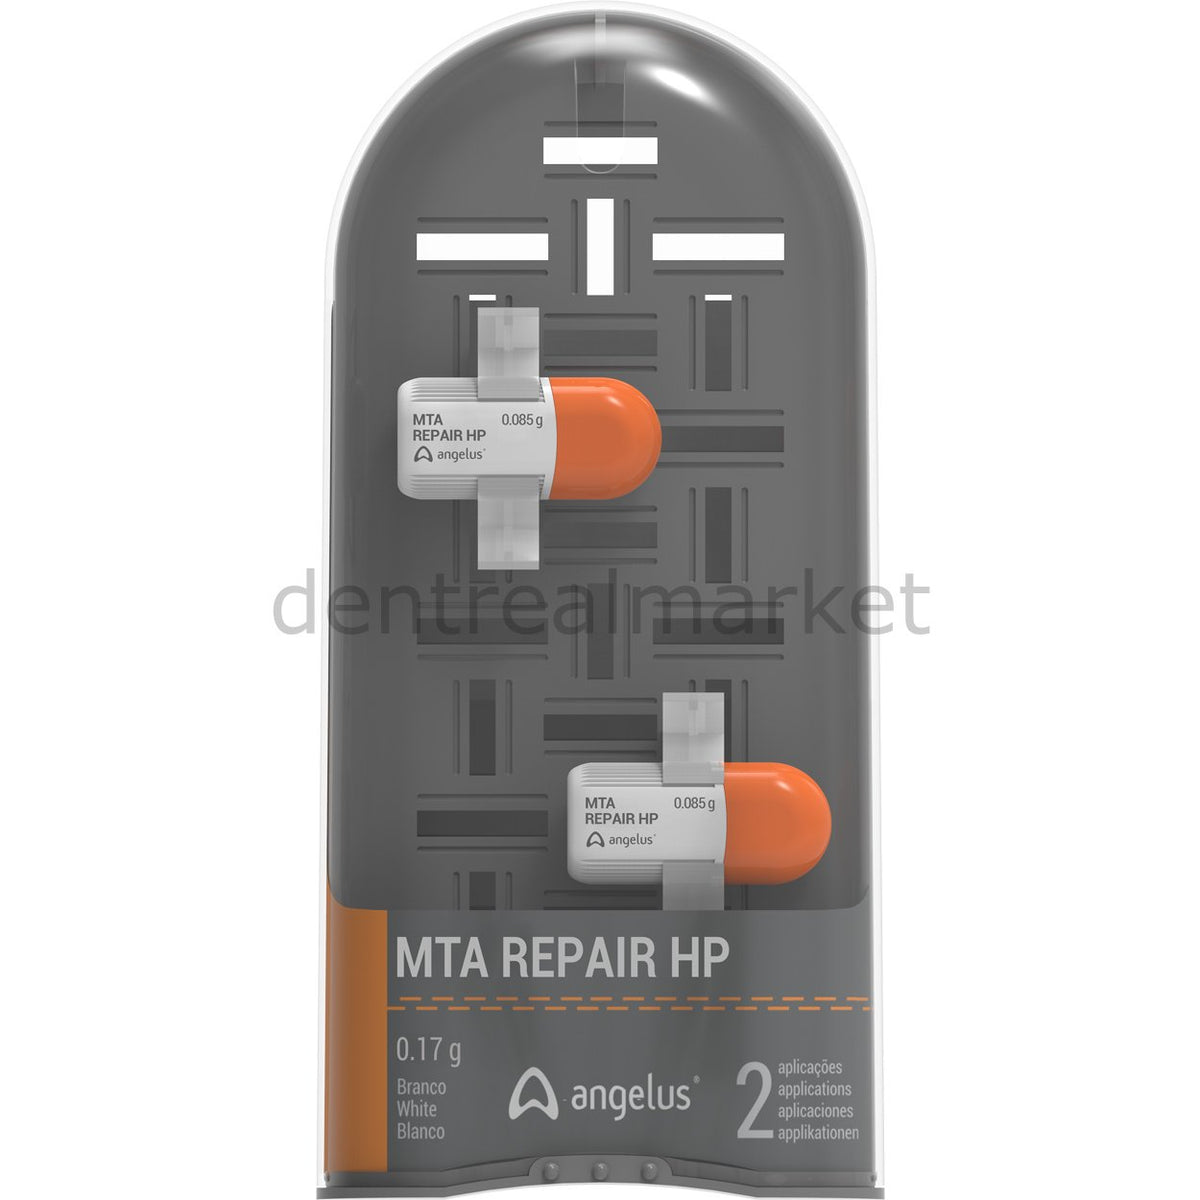 DentrealStore - Angelus MTA Repair HP - 2 Doses - Bioceramic MTA